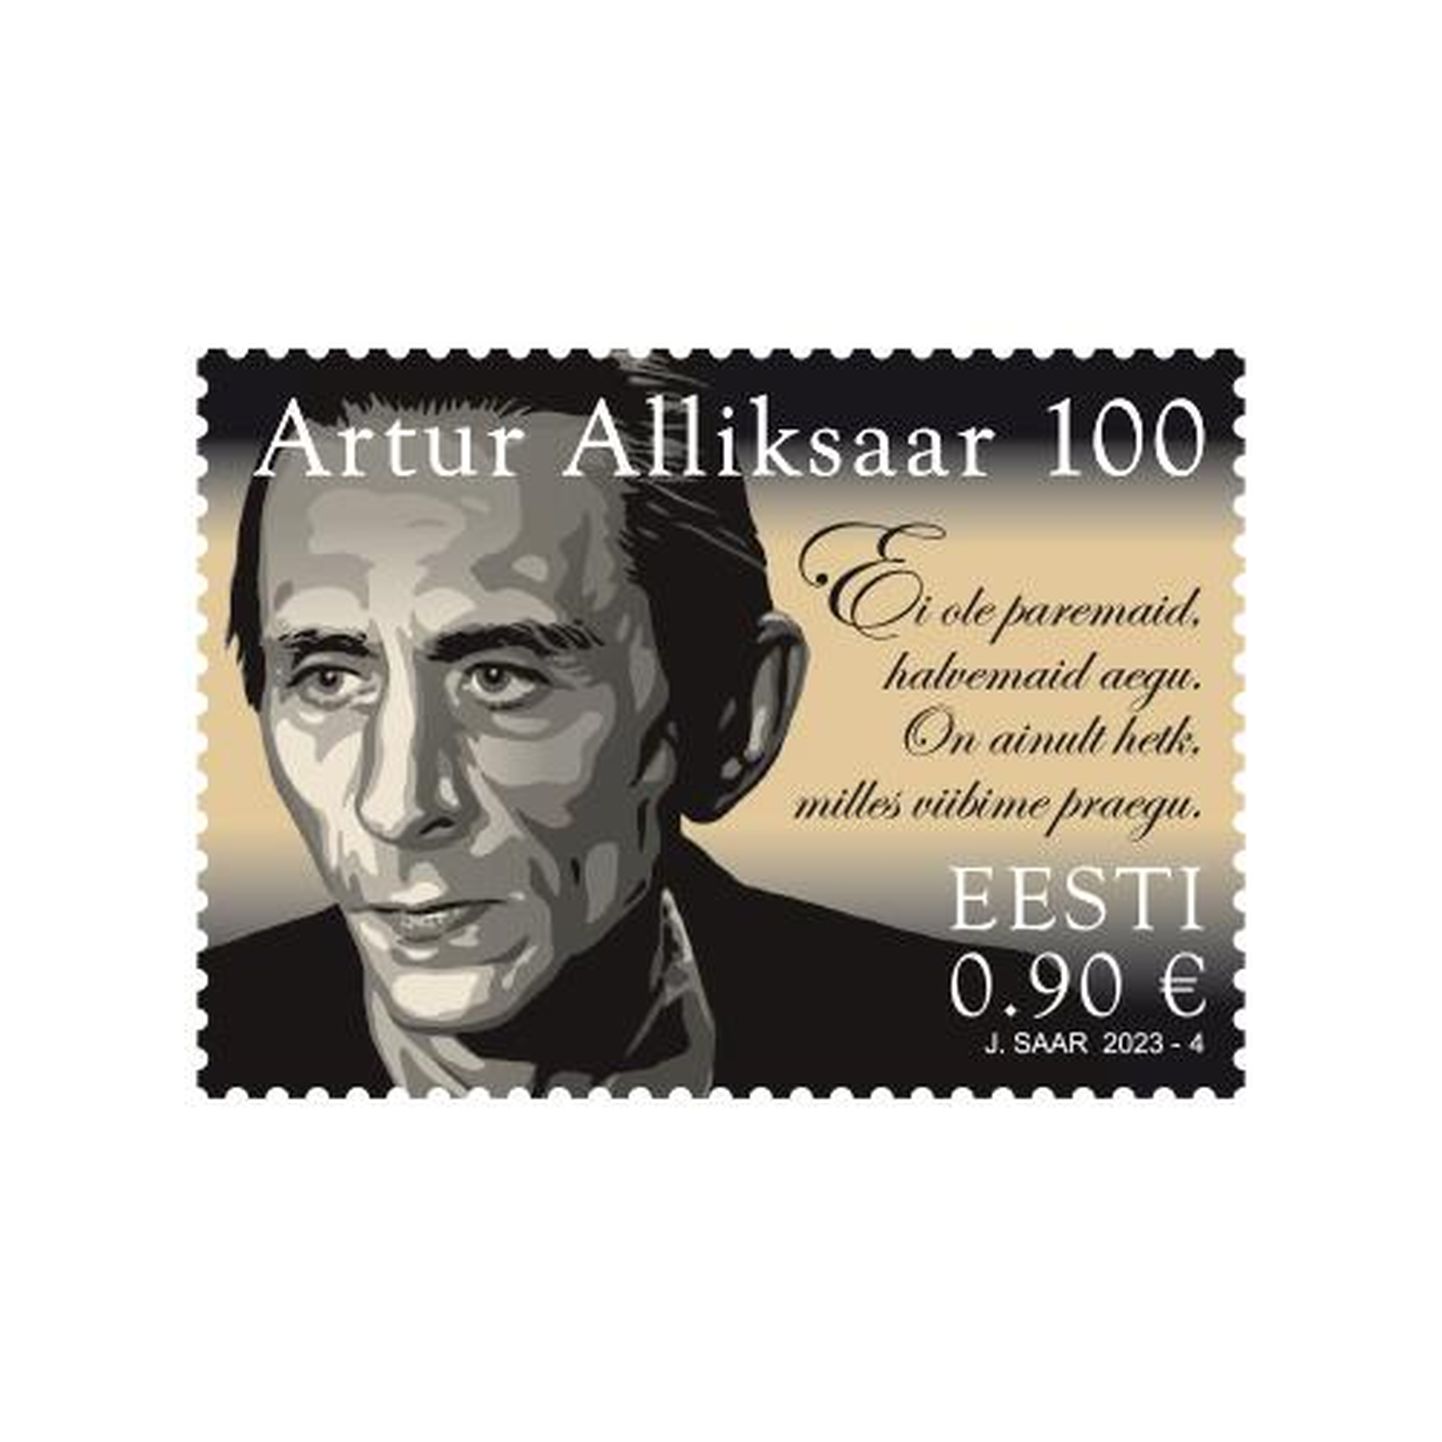 Artur Alliksaare postmark.